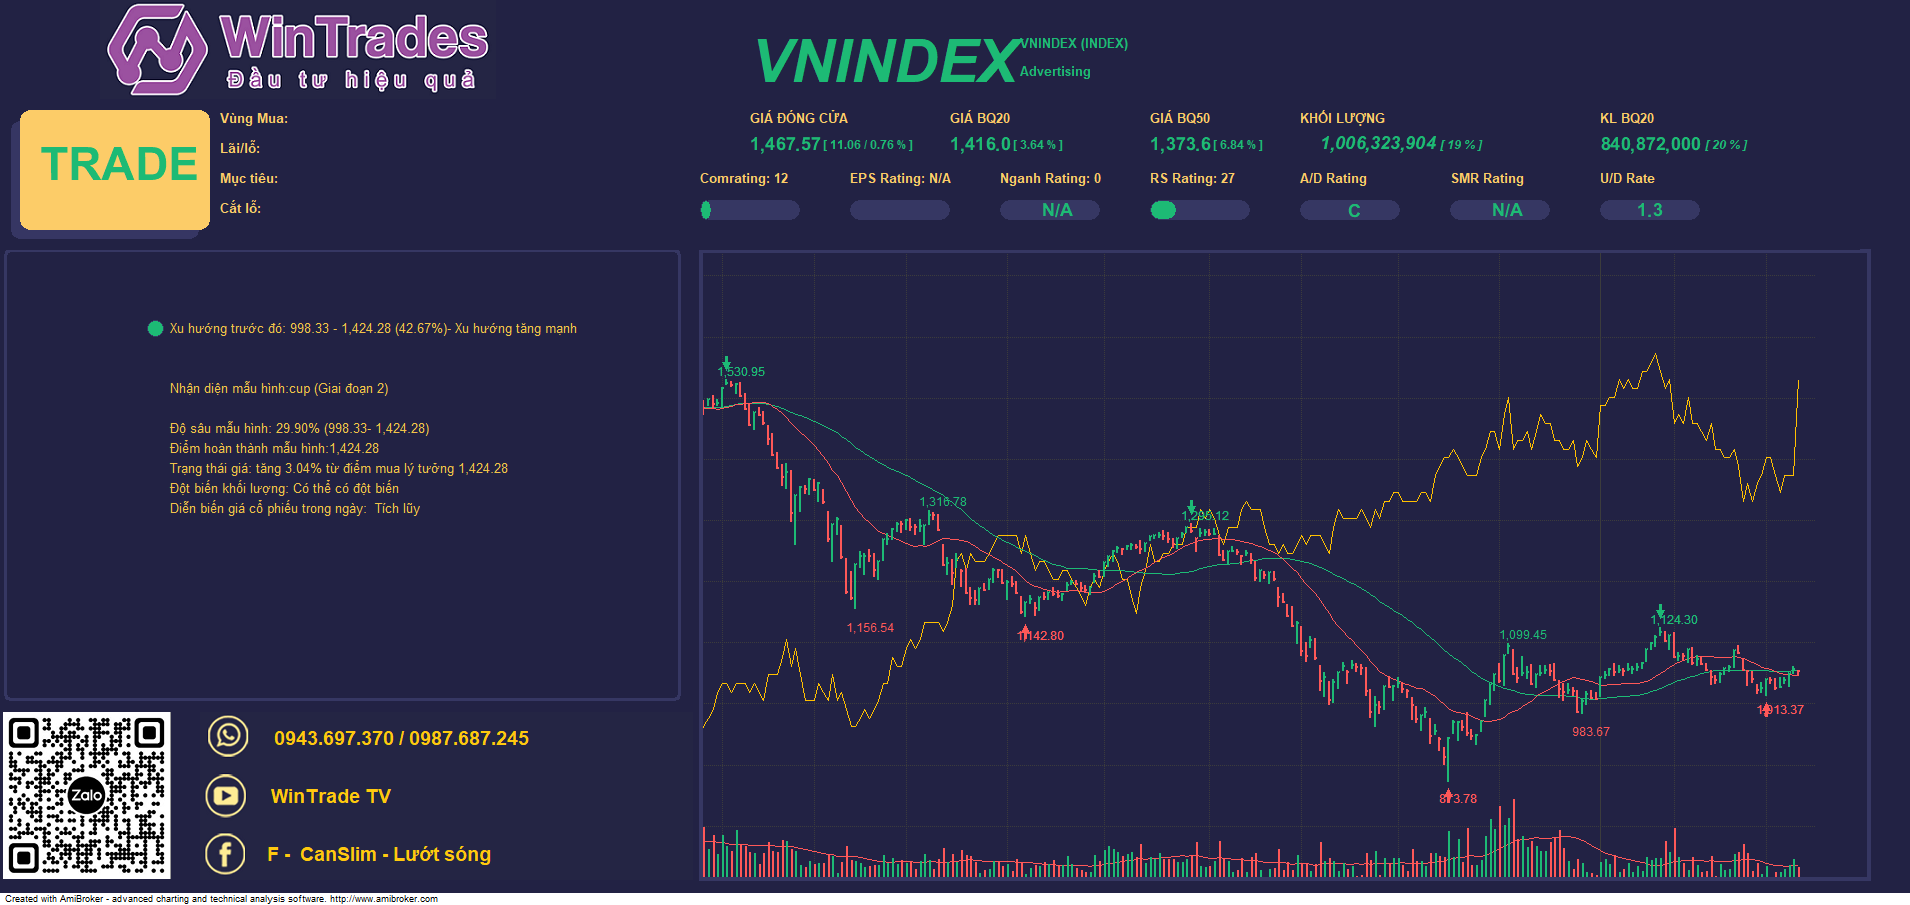 Nỗ lực tăng giá - Cầu ngoại tích cực, Vnindex vượt kháng cự ngắn hạn 1046 điểm 9/3/2023